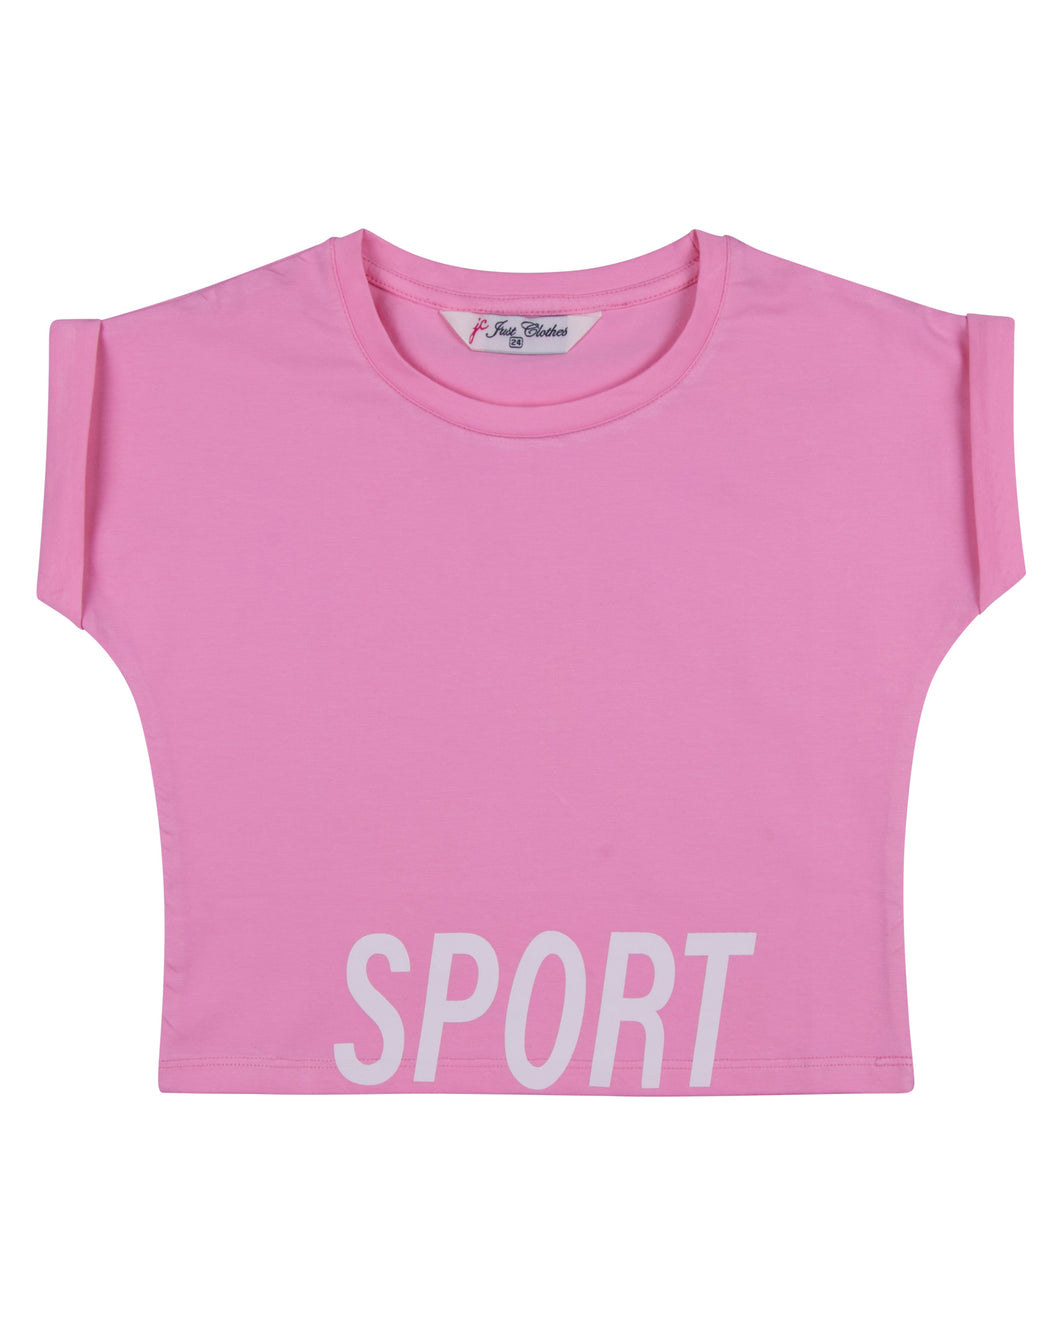 Girls Fashion Printed Light Pink Short Top